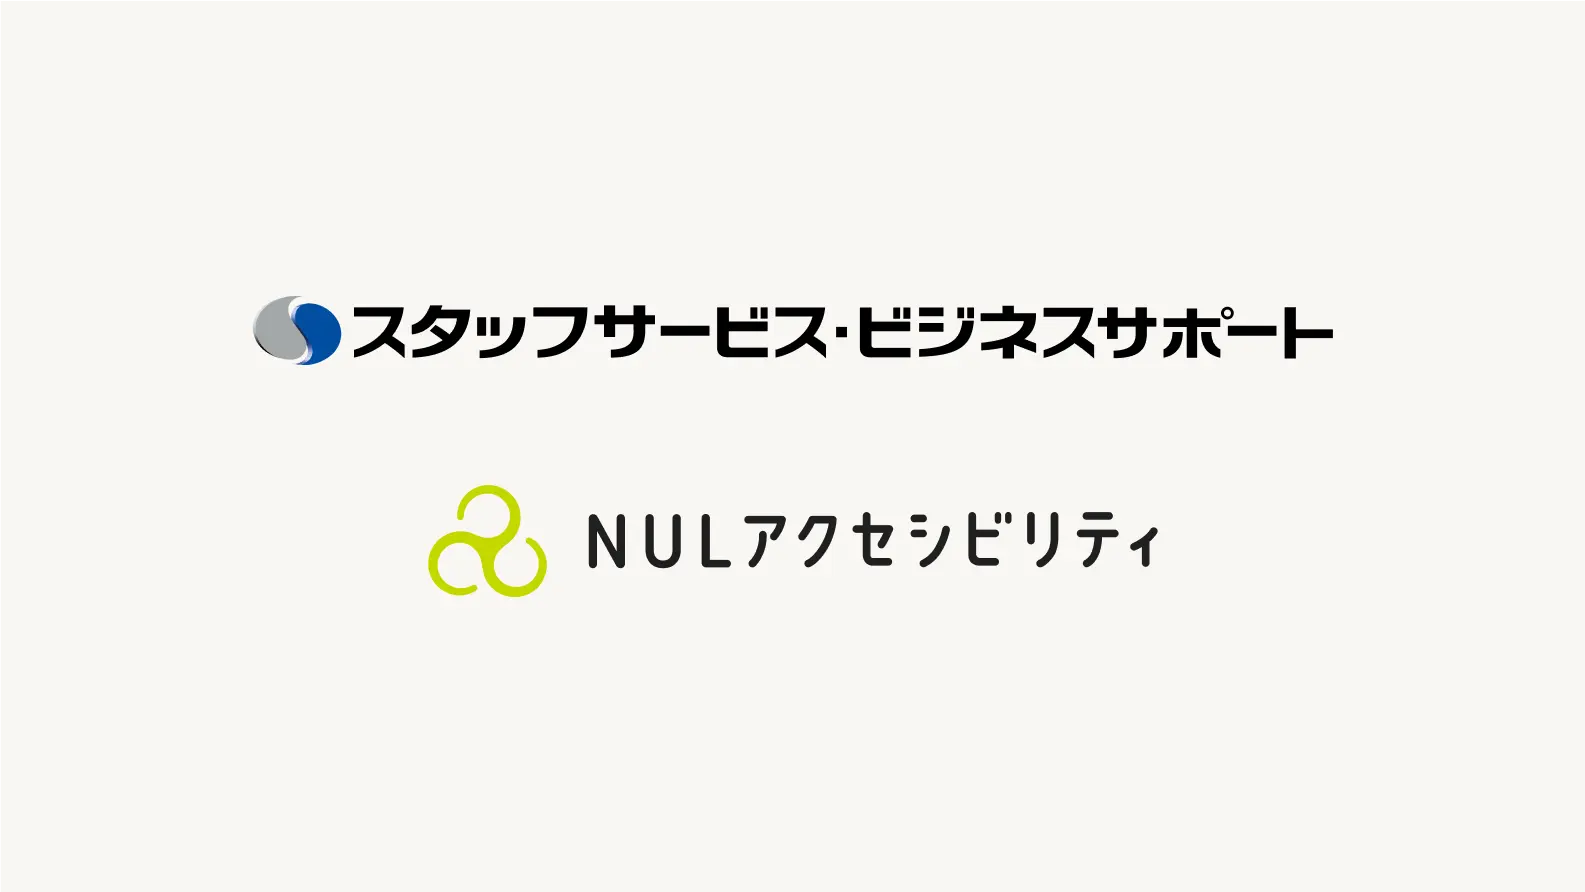 スタッフサービスビジネスサポートロゴとNULアクセシビリティロゴ